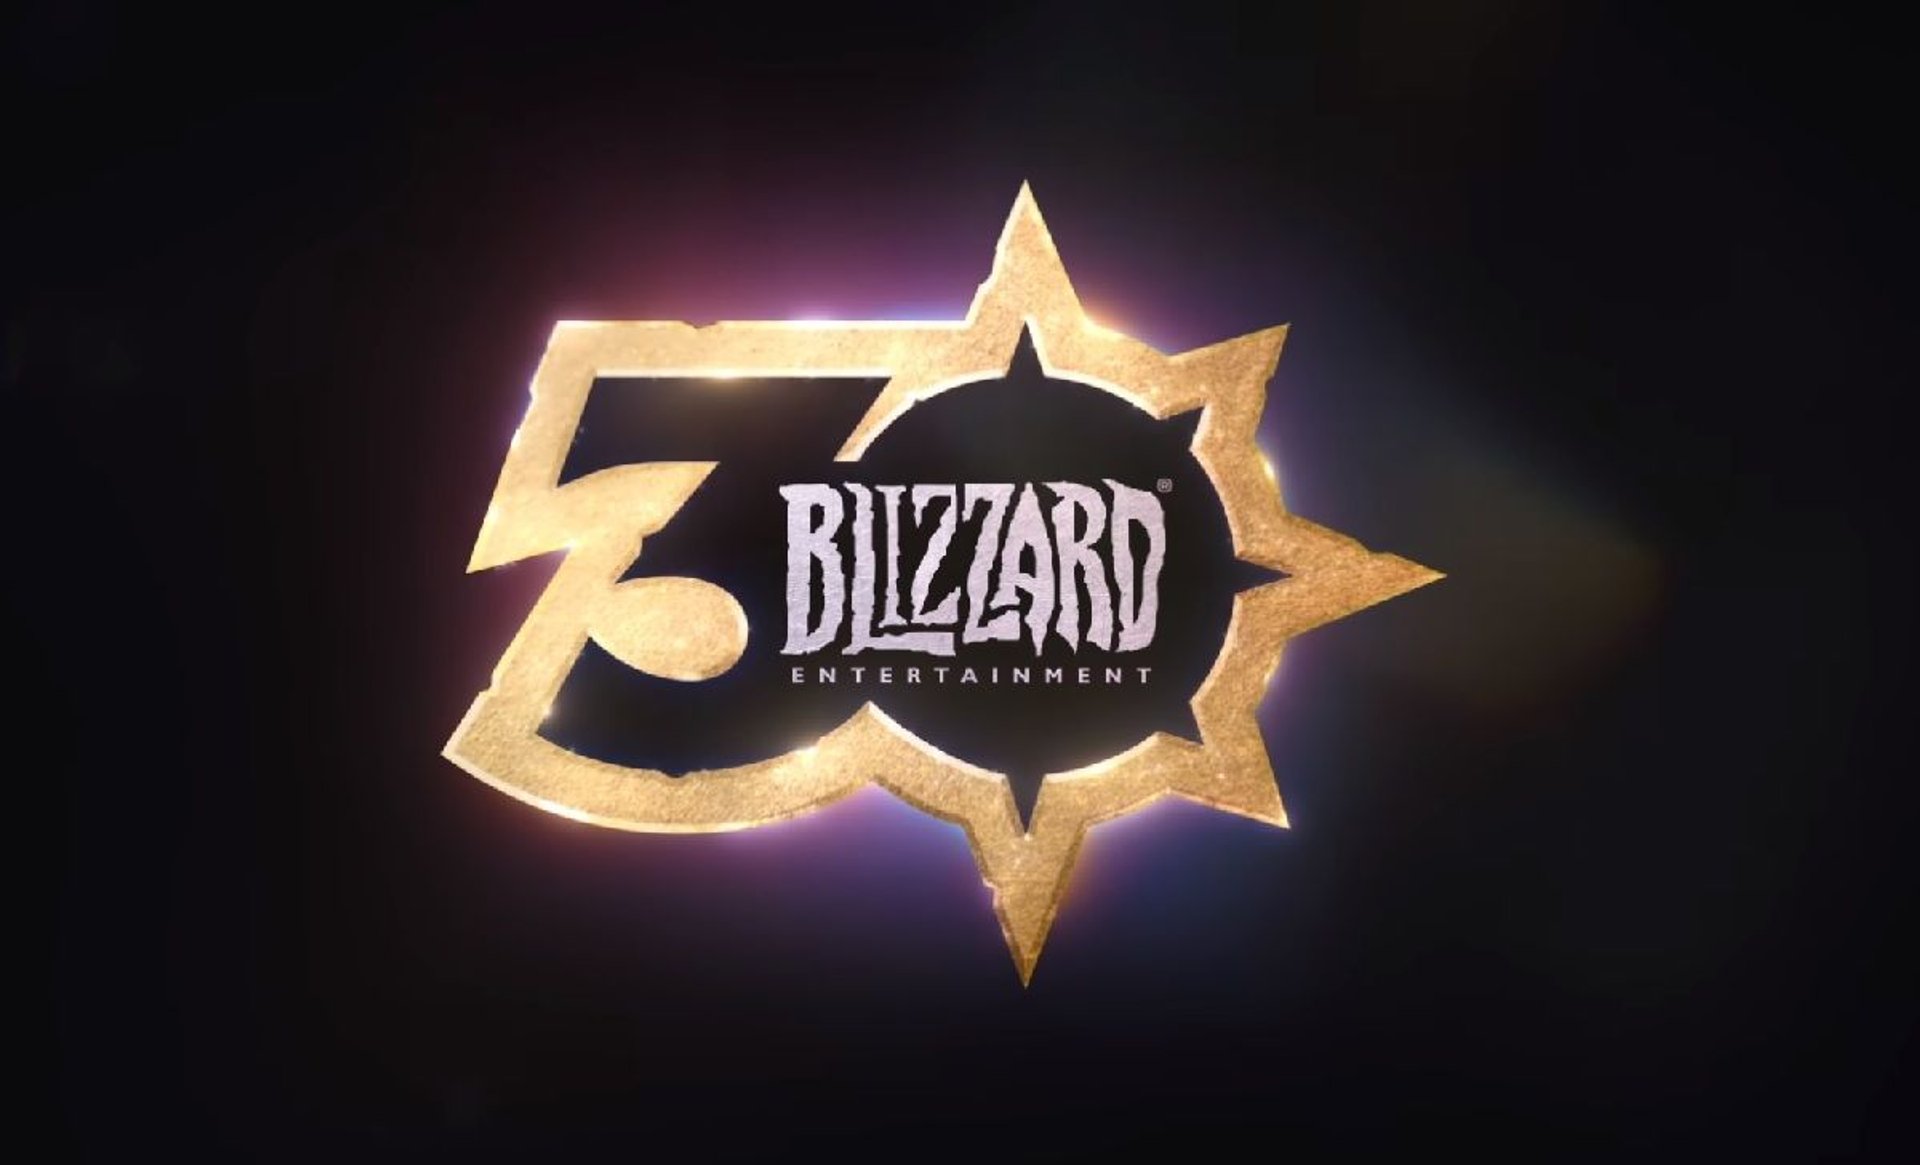 Blizzard Entertainment BlizzConline 2021